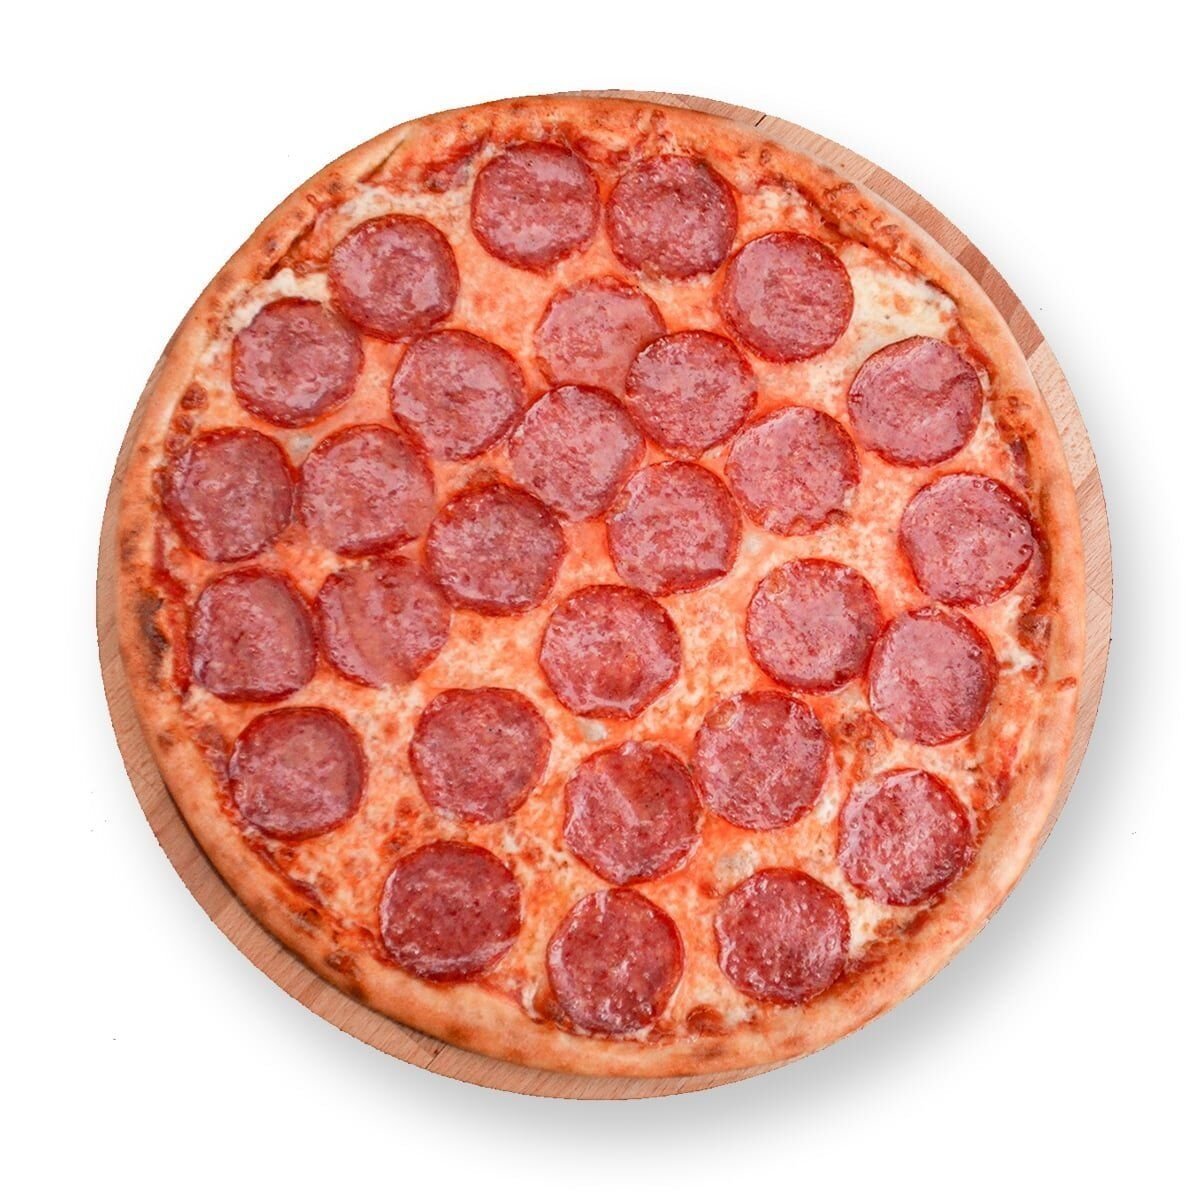 я хочу пиццу наполовину с беконом и сосисками и наполовину с пепперони и ветчиной фото 105